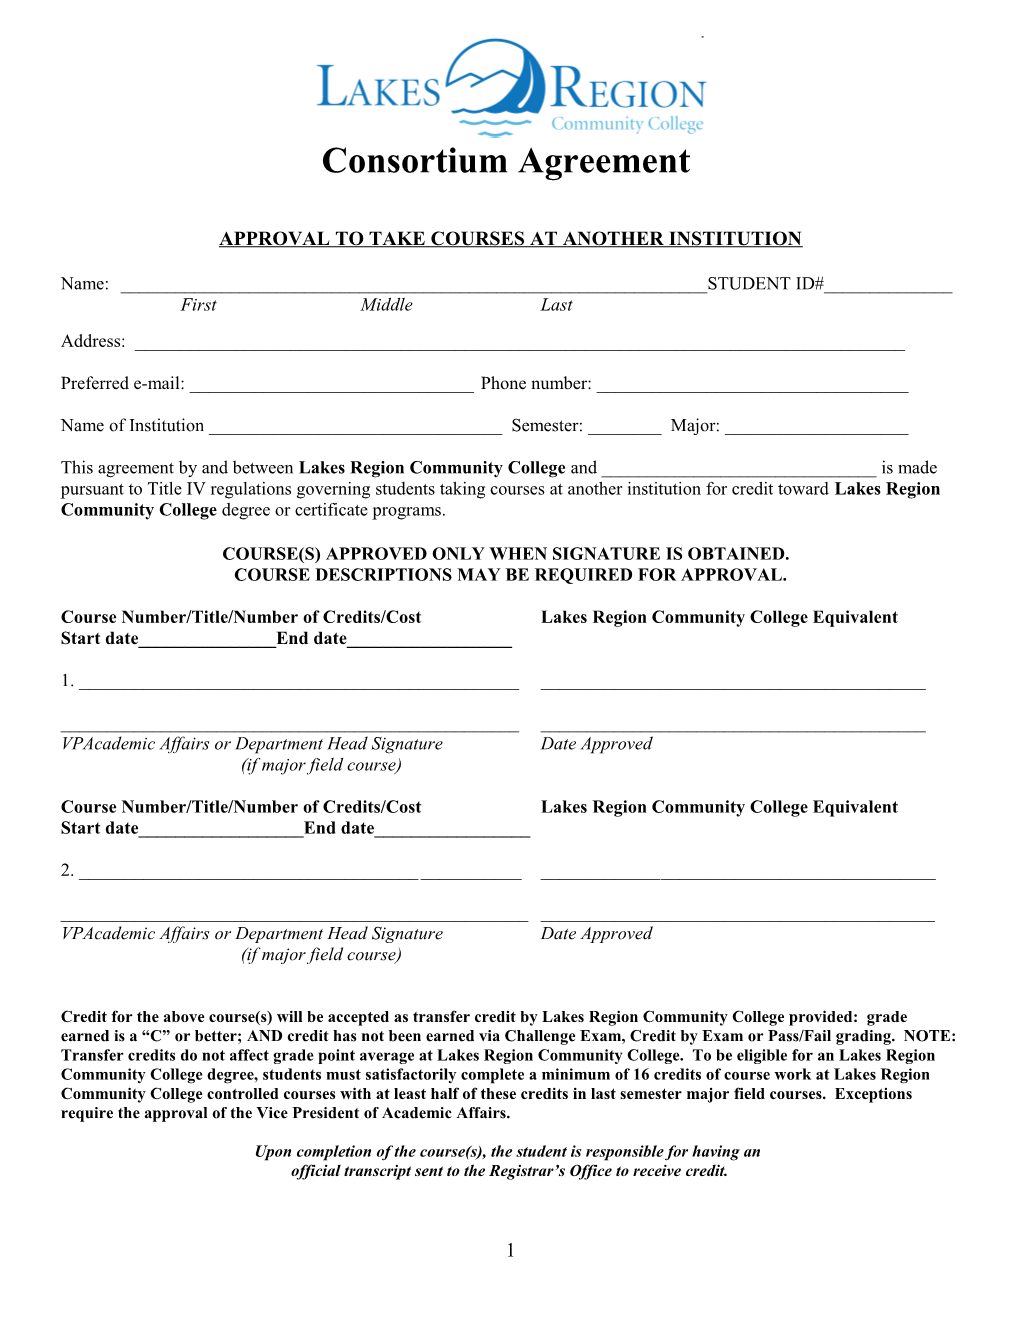 Consortium Agreement Between